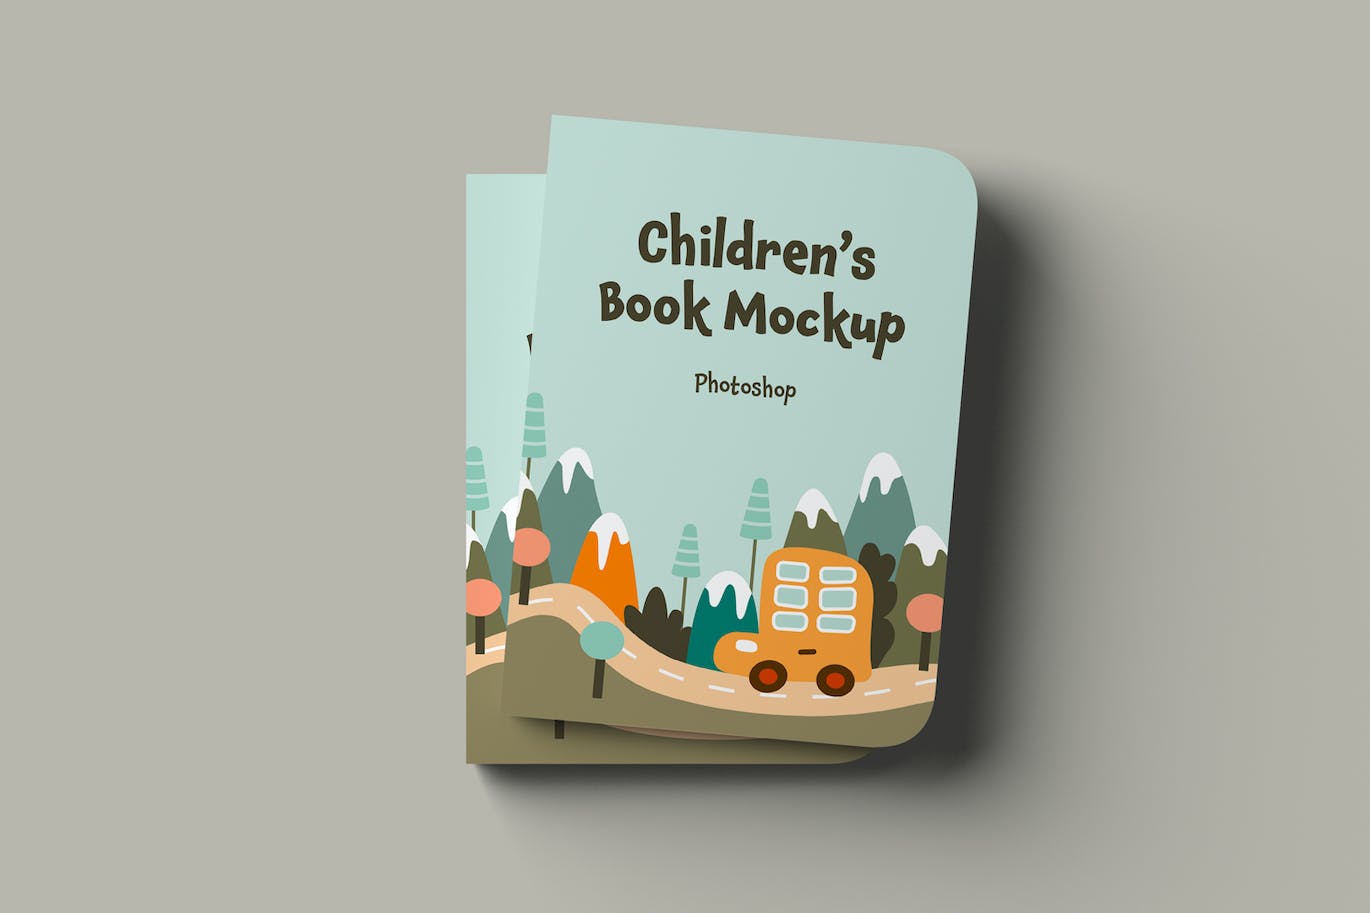 儿童书籍封面设计样机 Children’s Book Mockups 样机素材 第2张